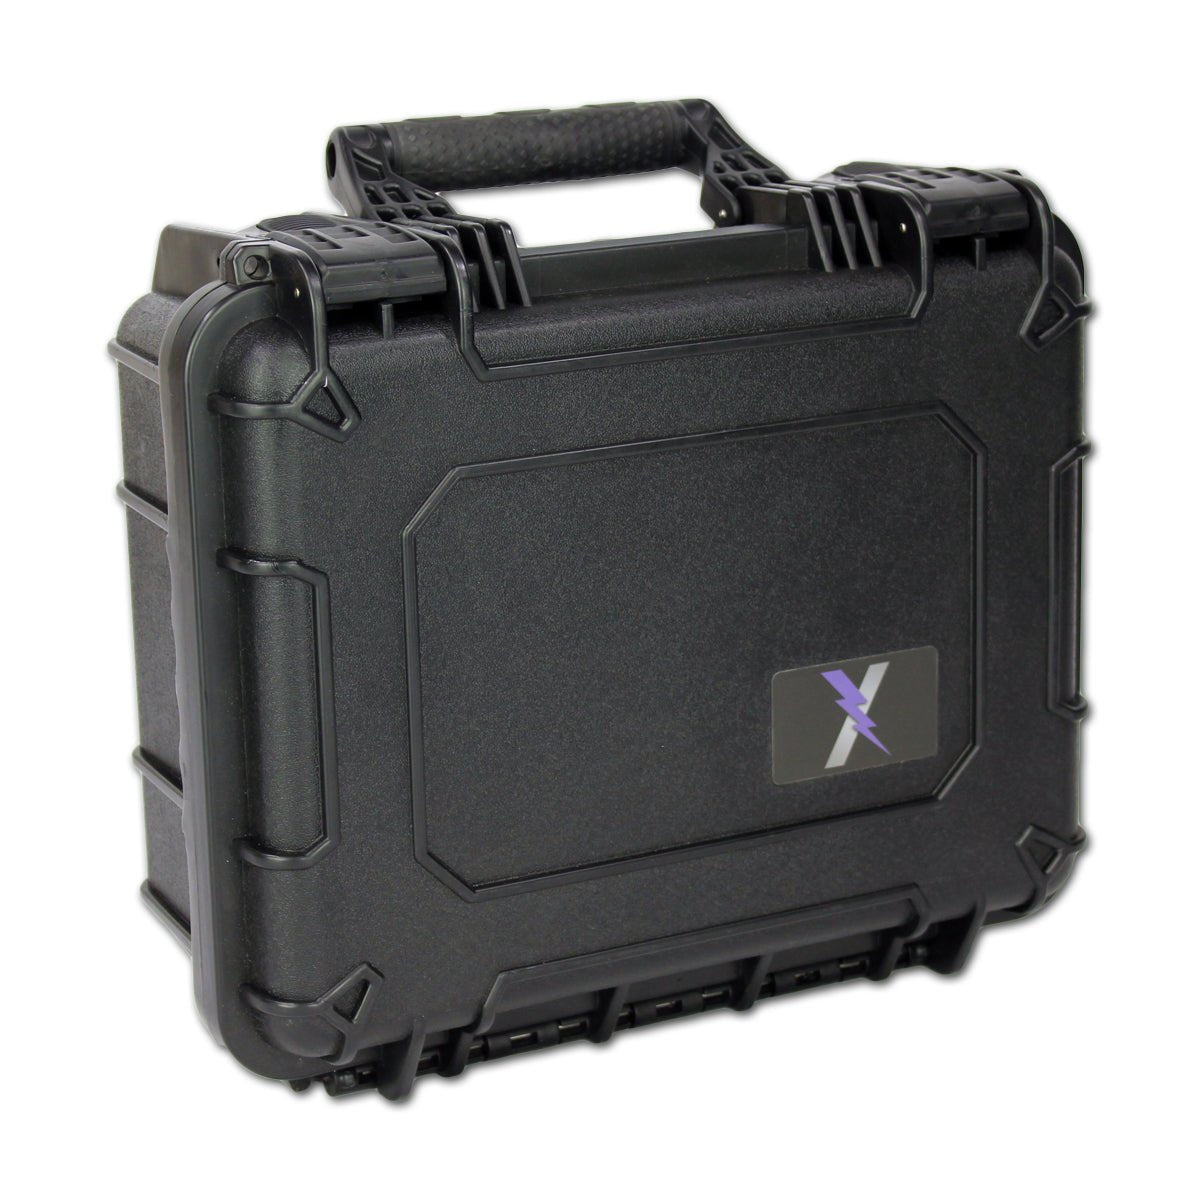 Premium Range Trauma Kit - HARD CASE - MED-TAC International Corp. - MED-TAC International